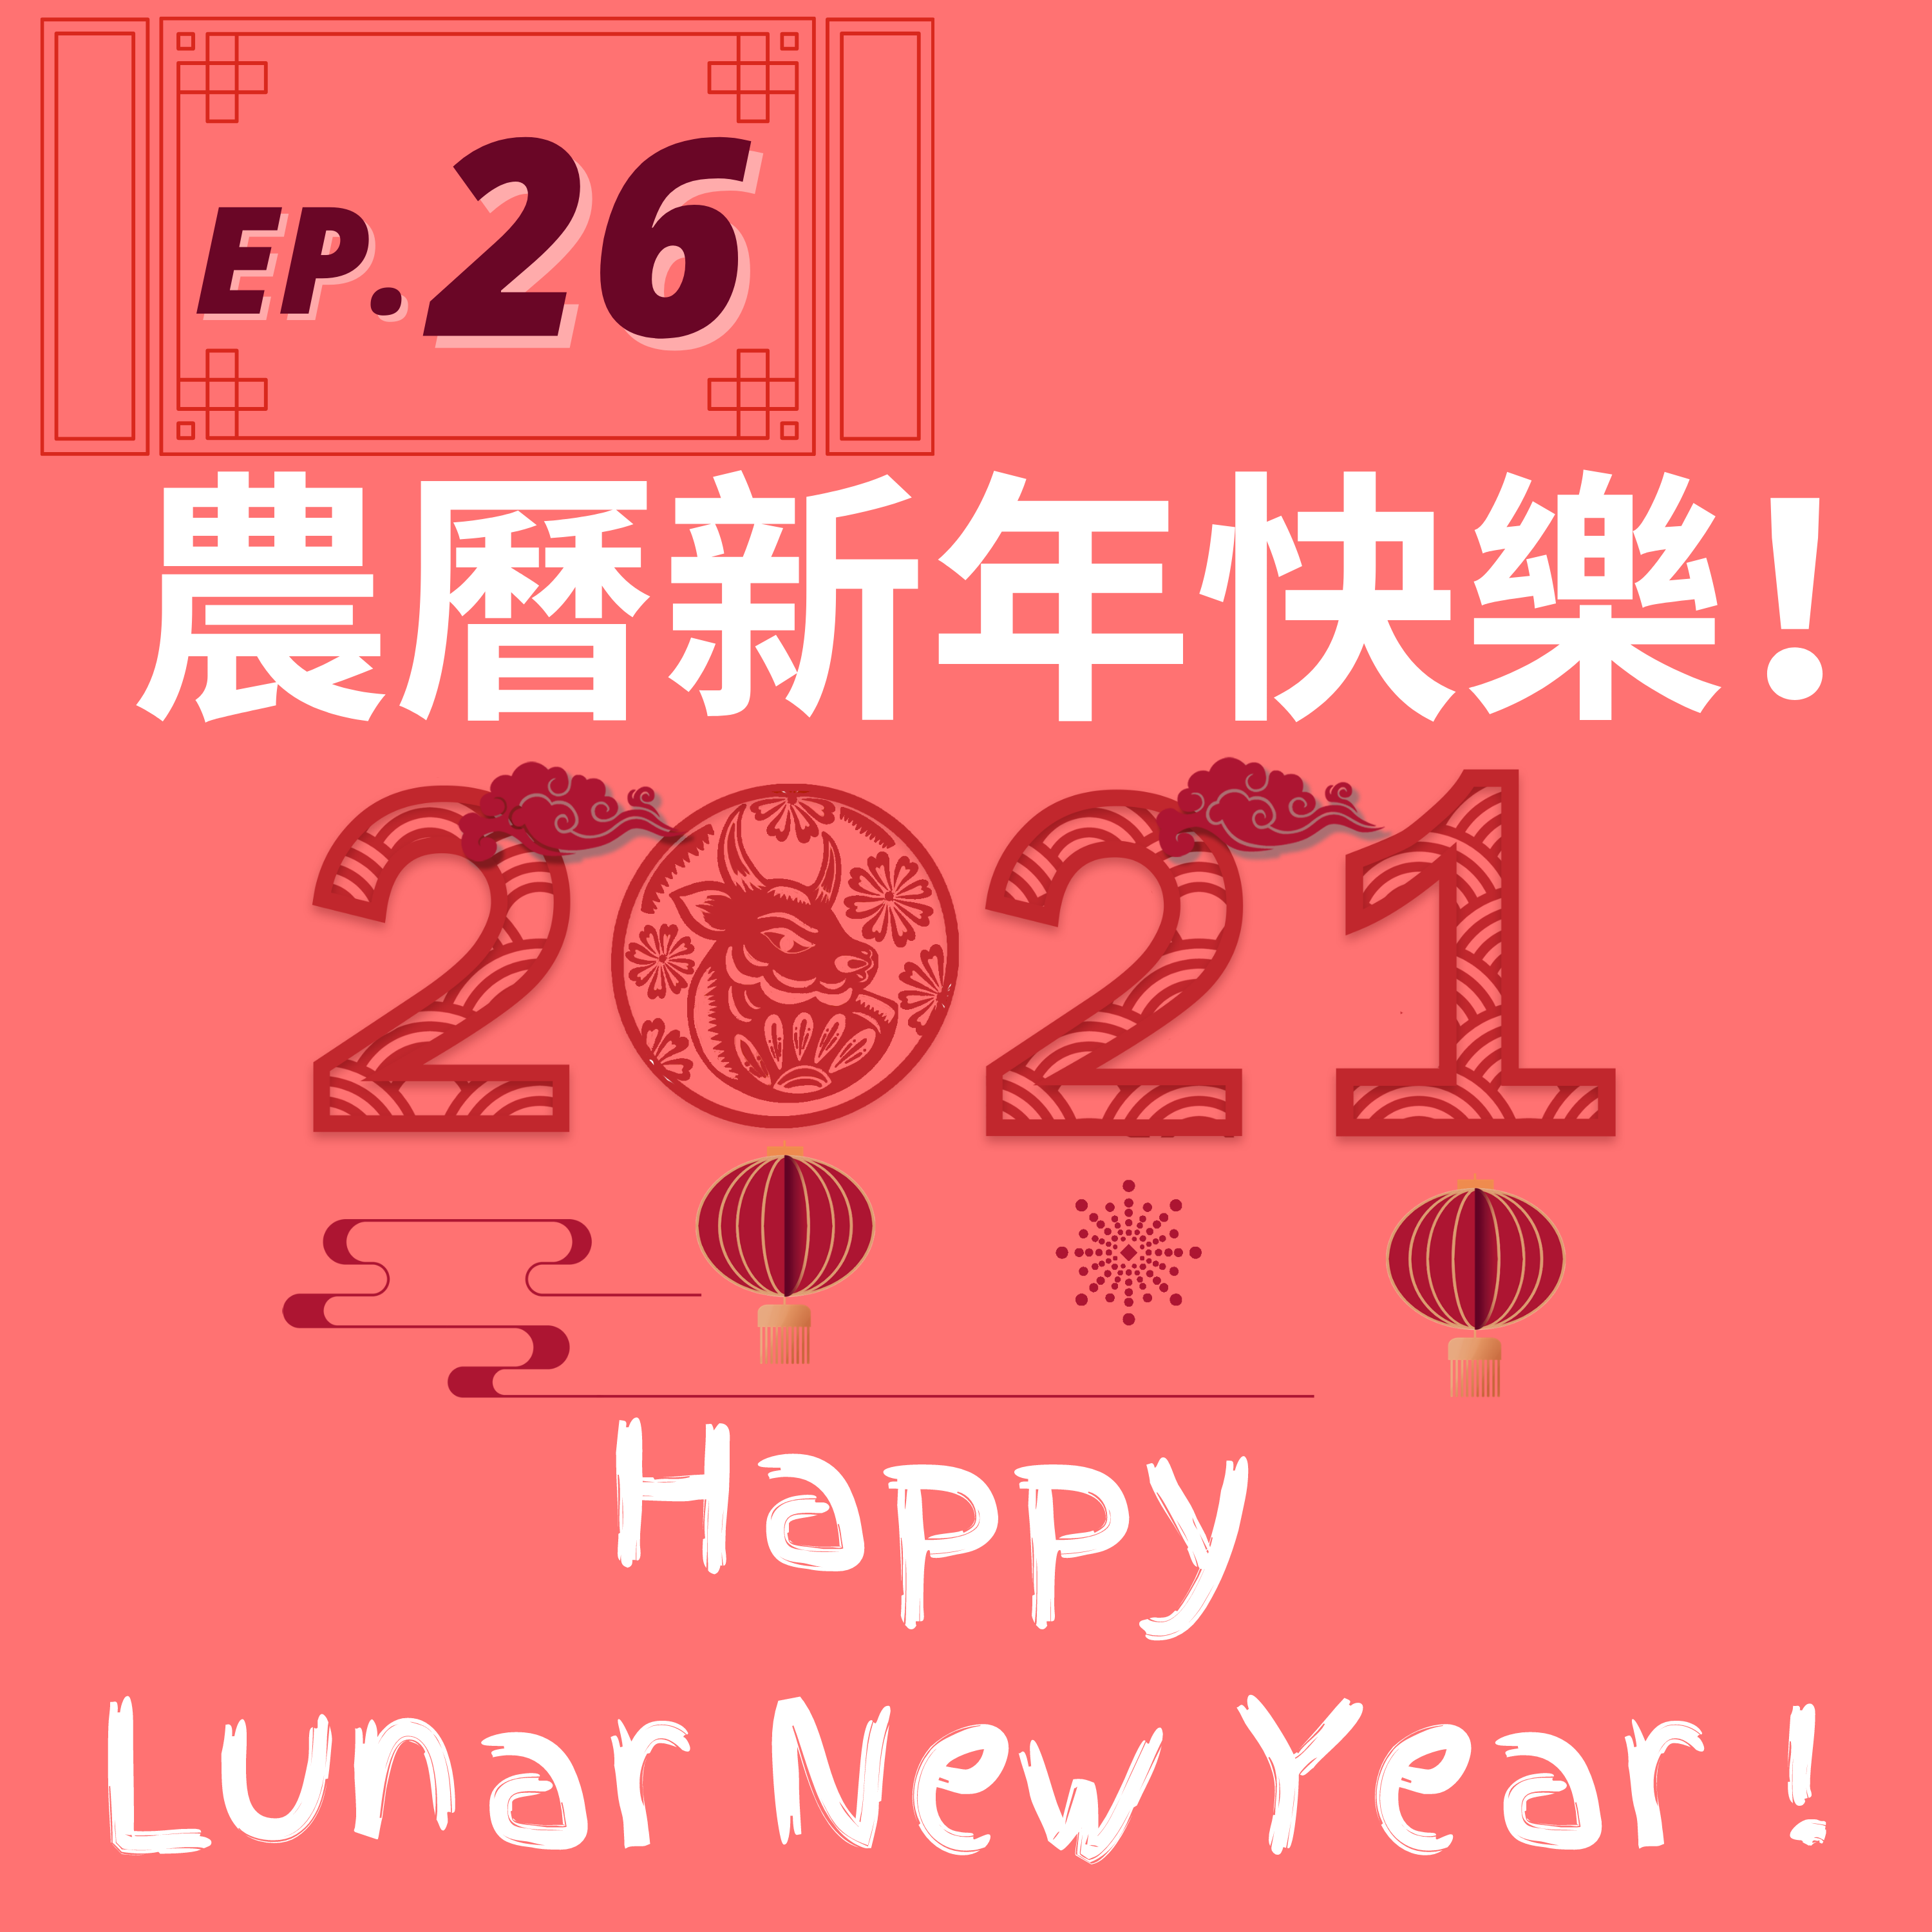 26. 農曆新年快樂！ Happy Lunar New Year!